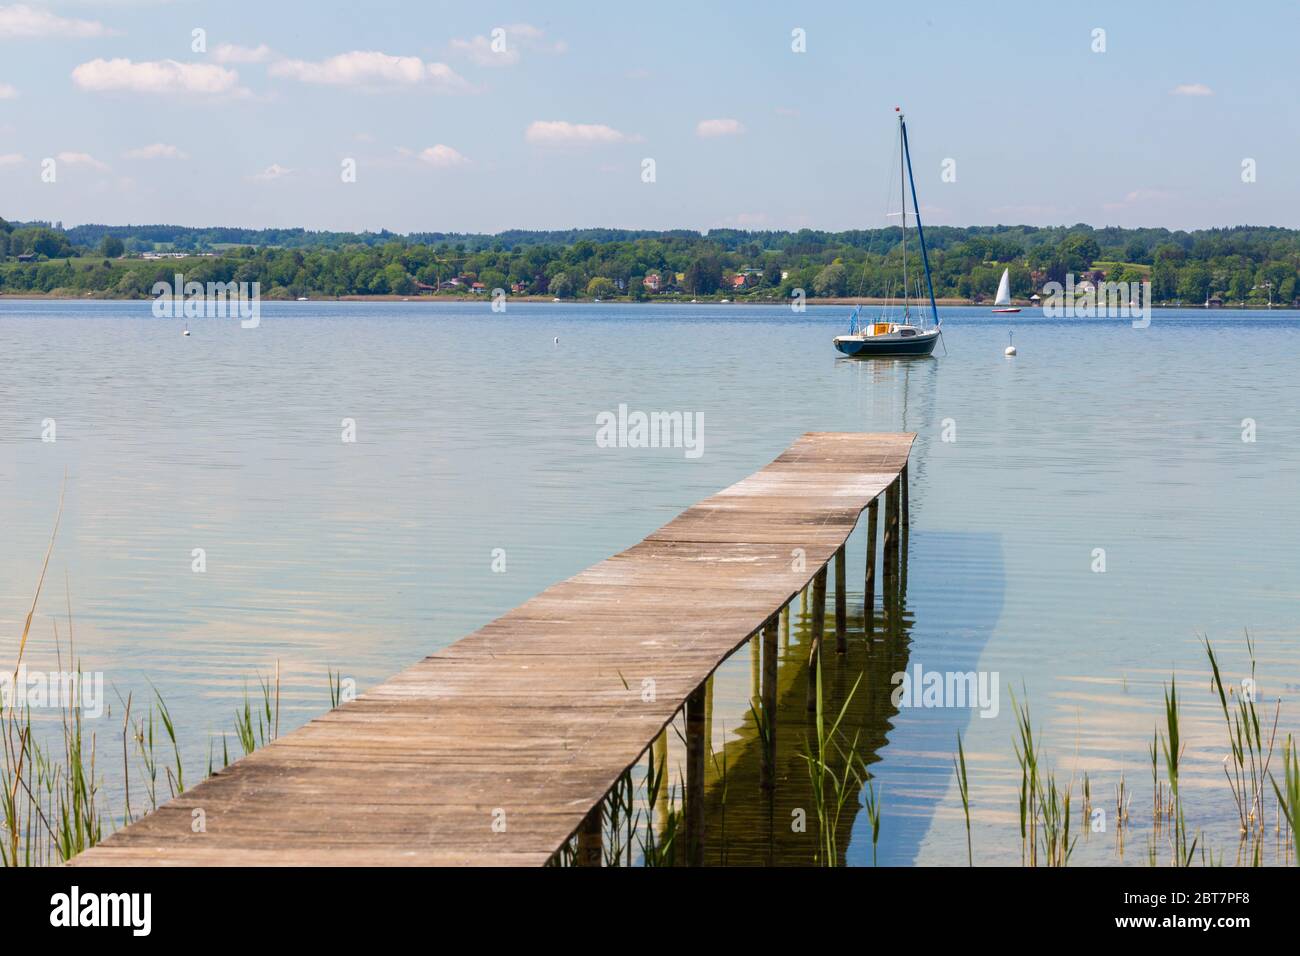 Molo in legno e barca a vela ad Ammersee (Lago Ammer). Cielo limpido con poche nuvole bianche. Simbolo per relax, ricchezza, attività di svago. Formato panorama Foto Stock